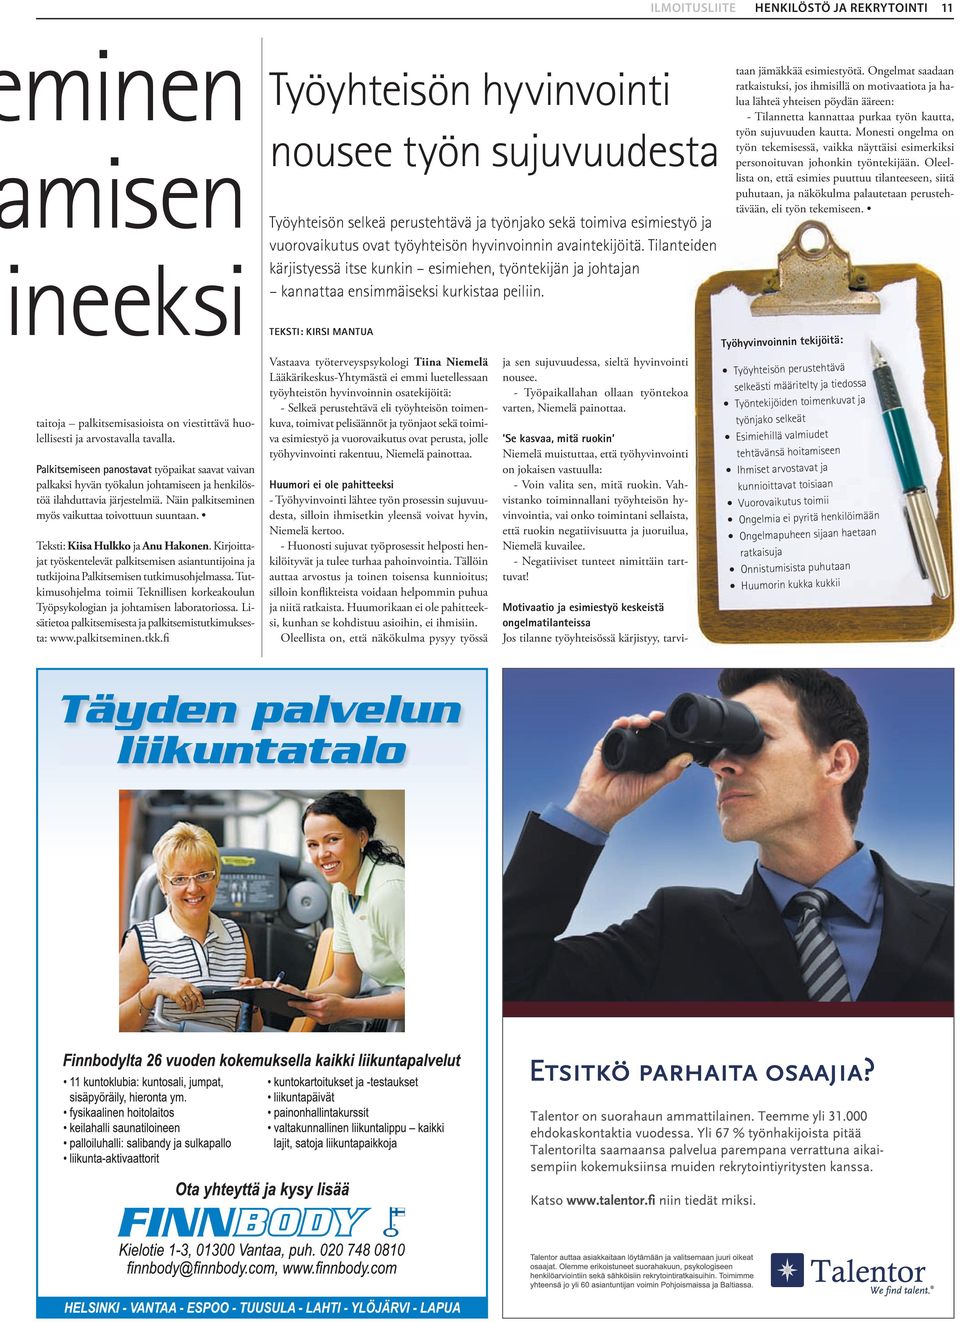 Teksti: Kiisa Hulkko ja Anu Hakonen. Kirjoittajat työskentelevät palkitsemisen asiantuntijoina ja tutkijoina Palkitsemisen tutkimusohjelmassa.